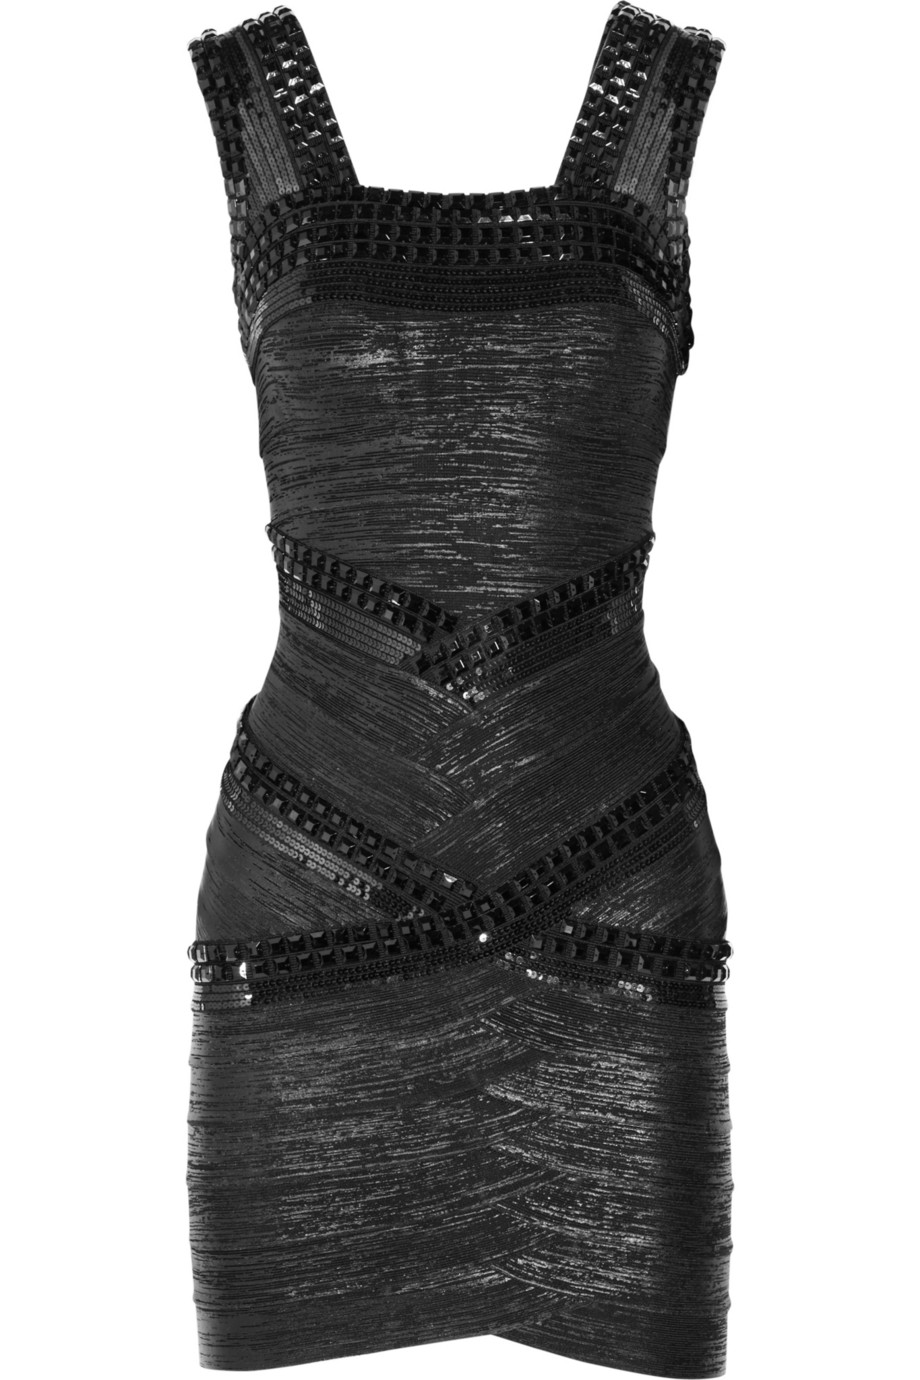 Hervé léger Embellished Bandage Dress in Black | Lyst